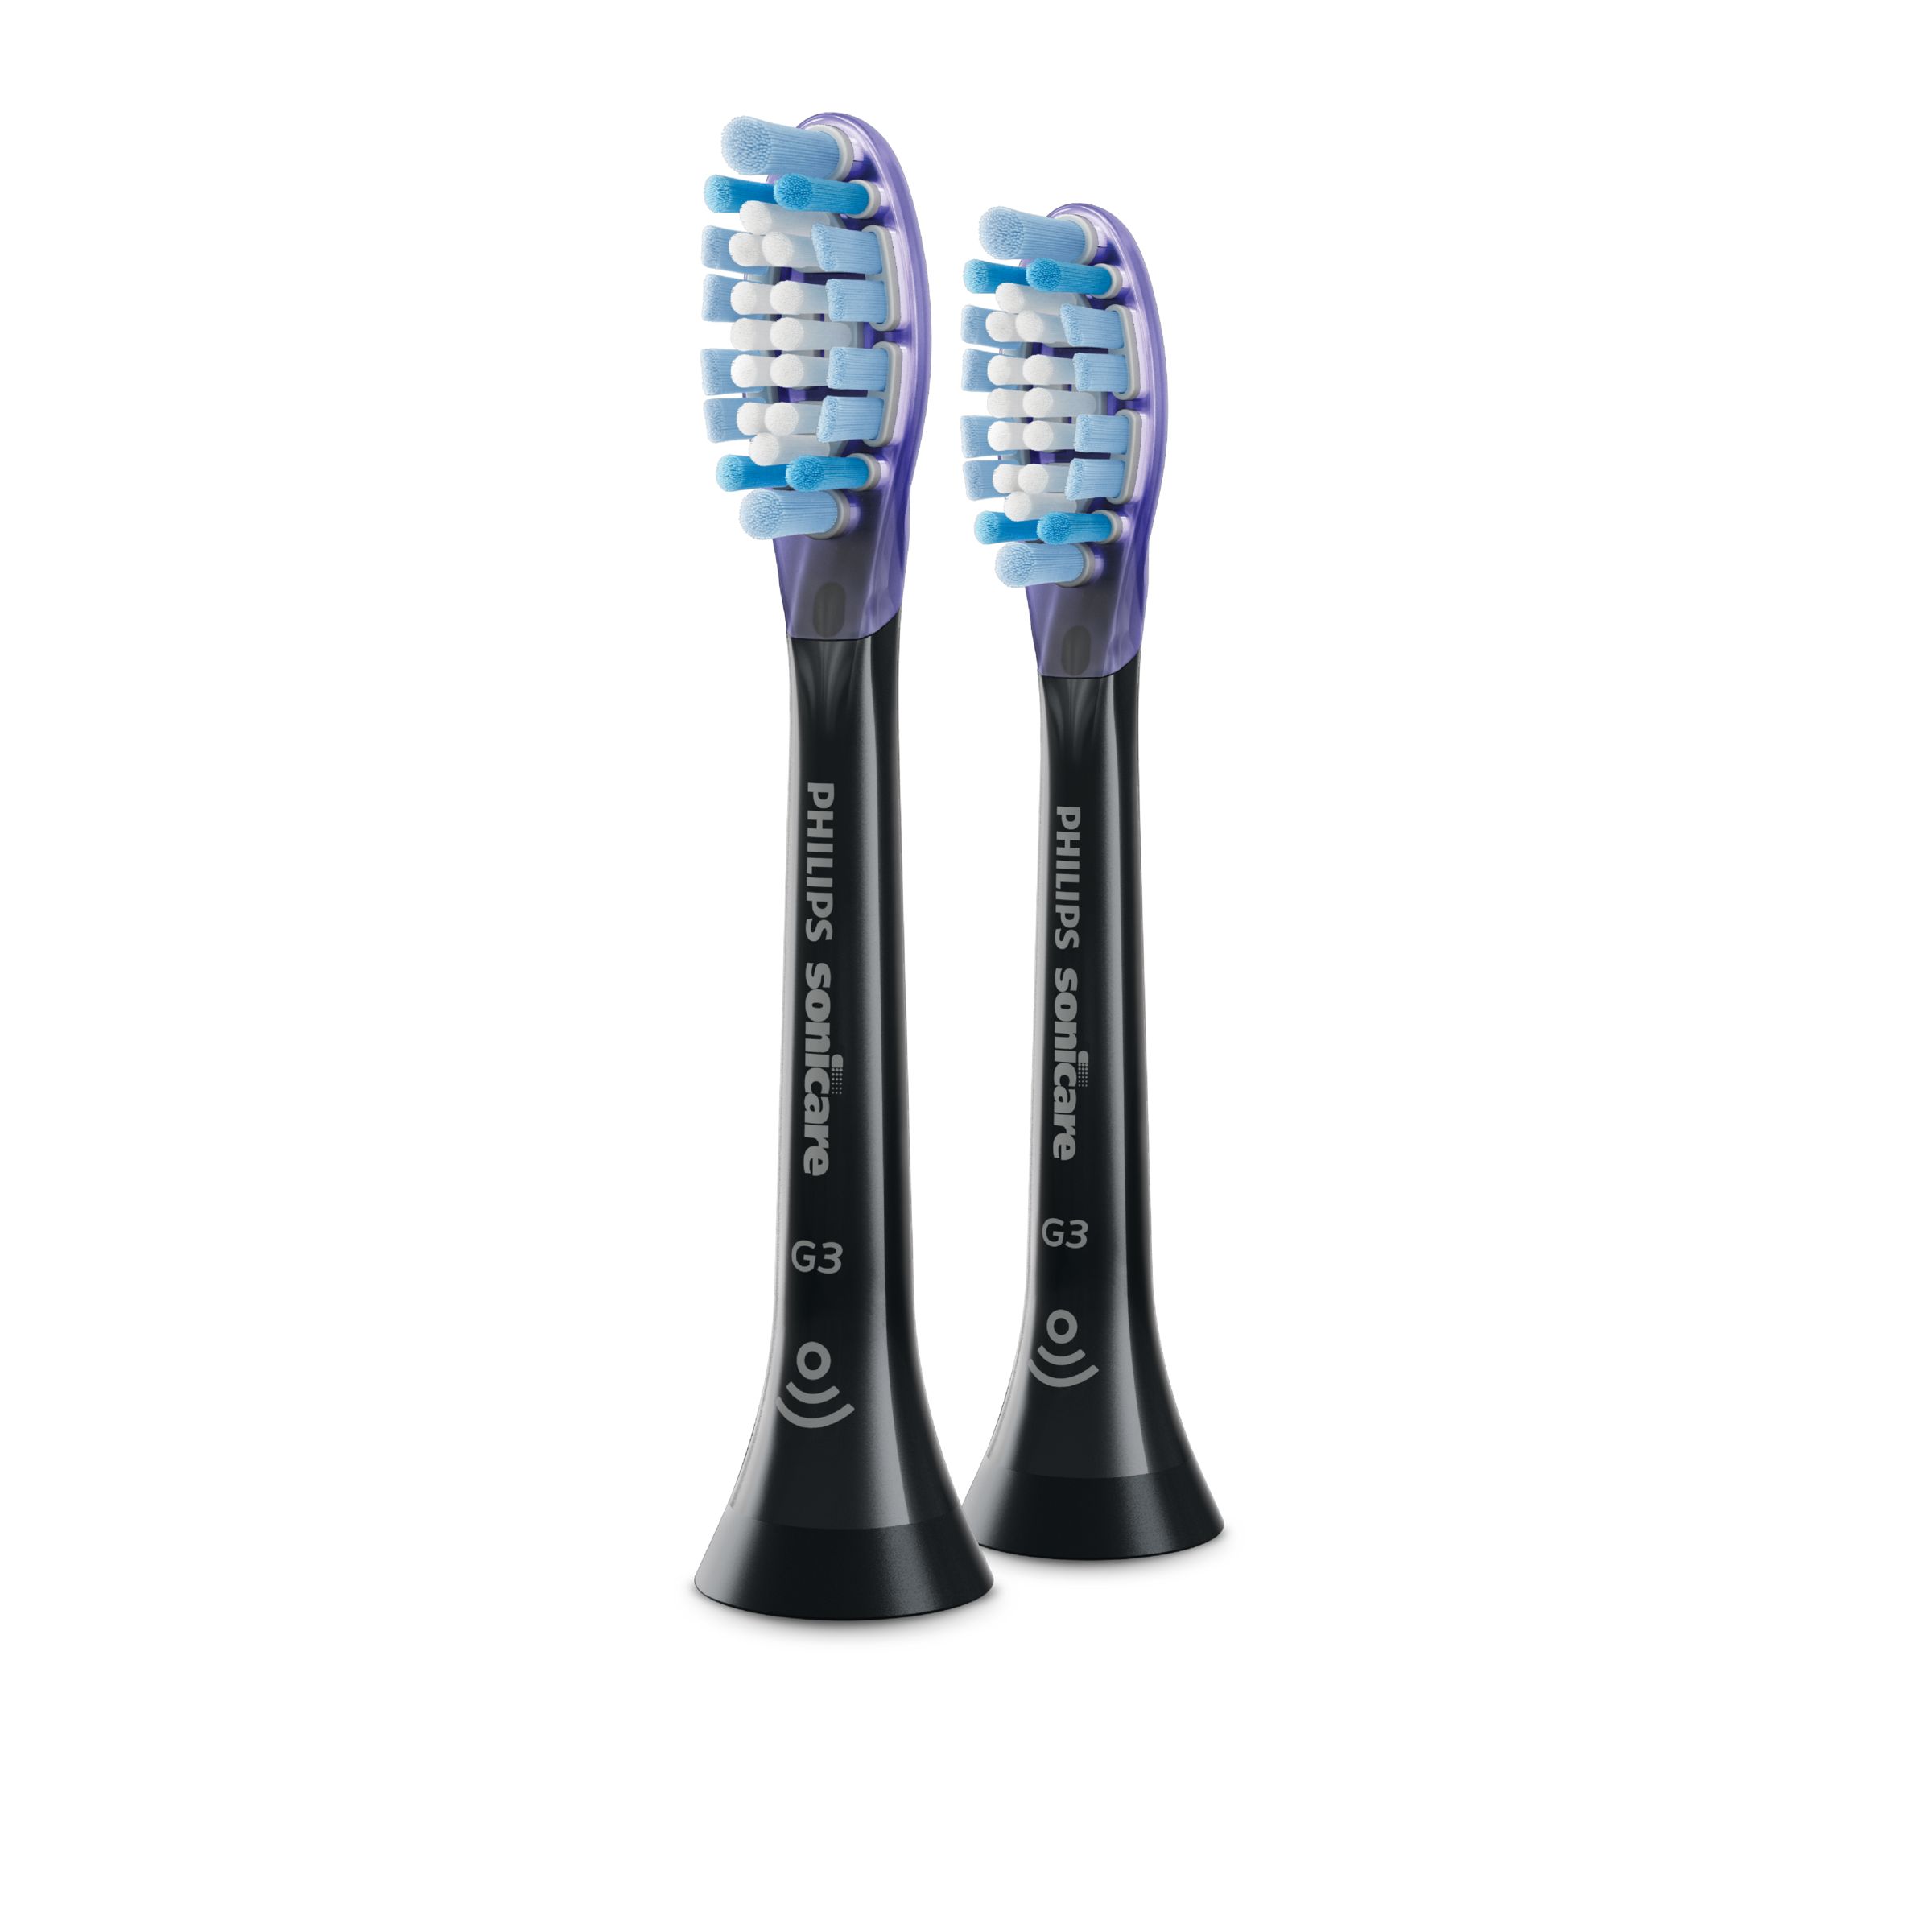 Image of Philips G3 Premium Gum Care - Standard sonic toothbrush heads - HX9052/95